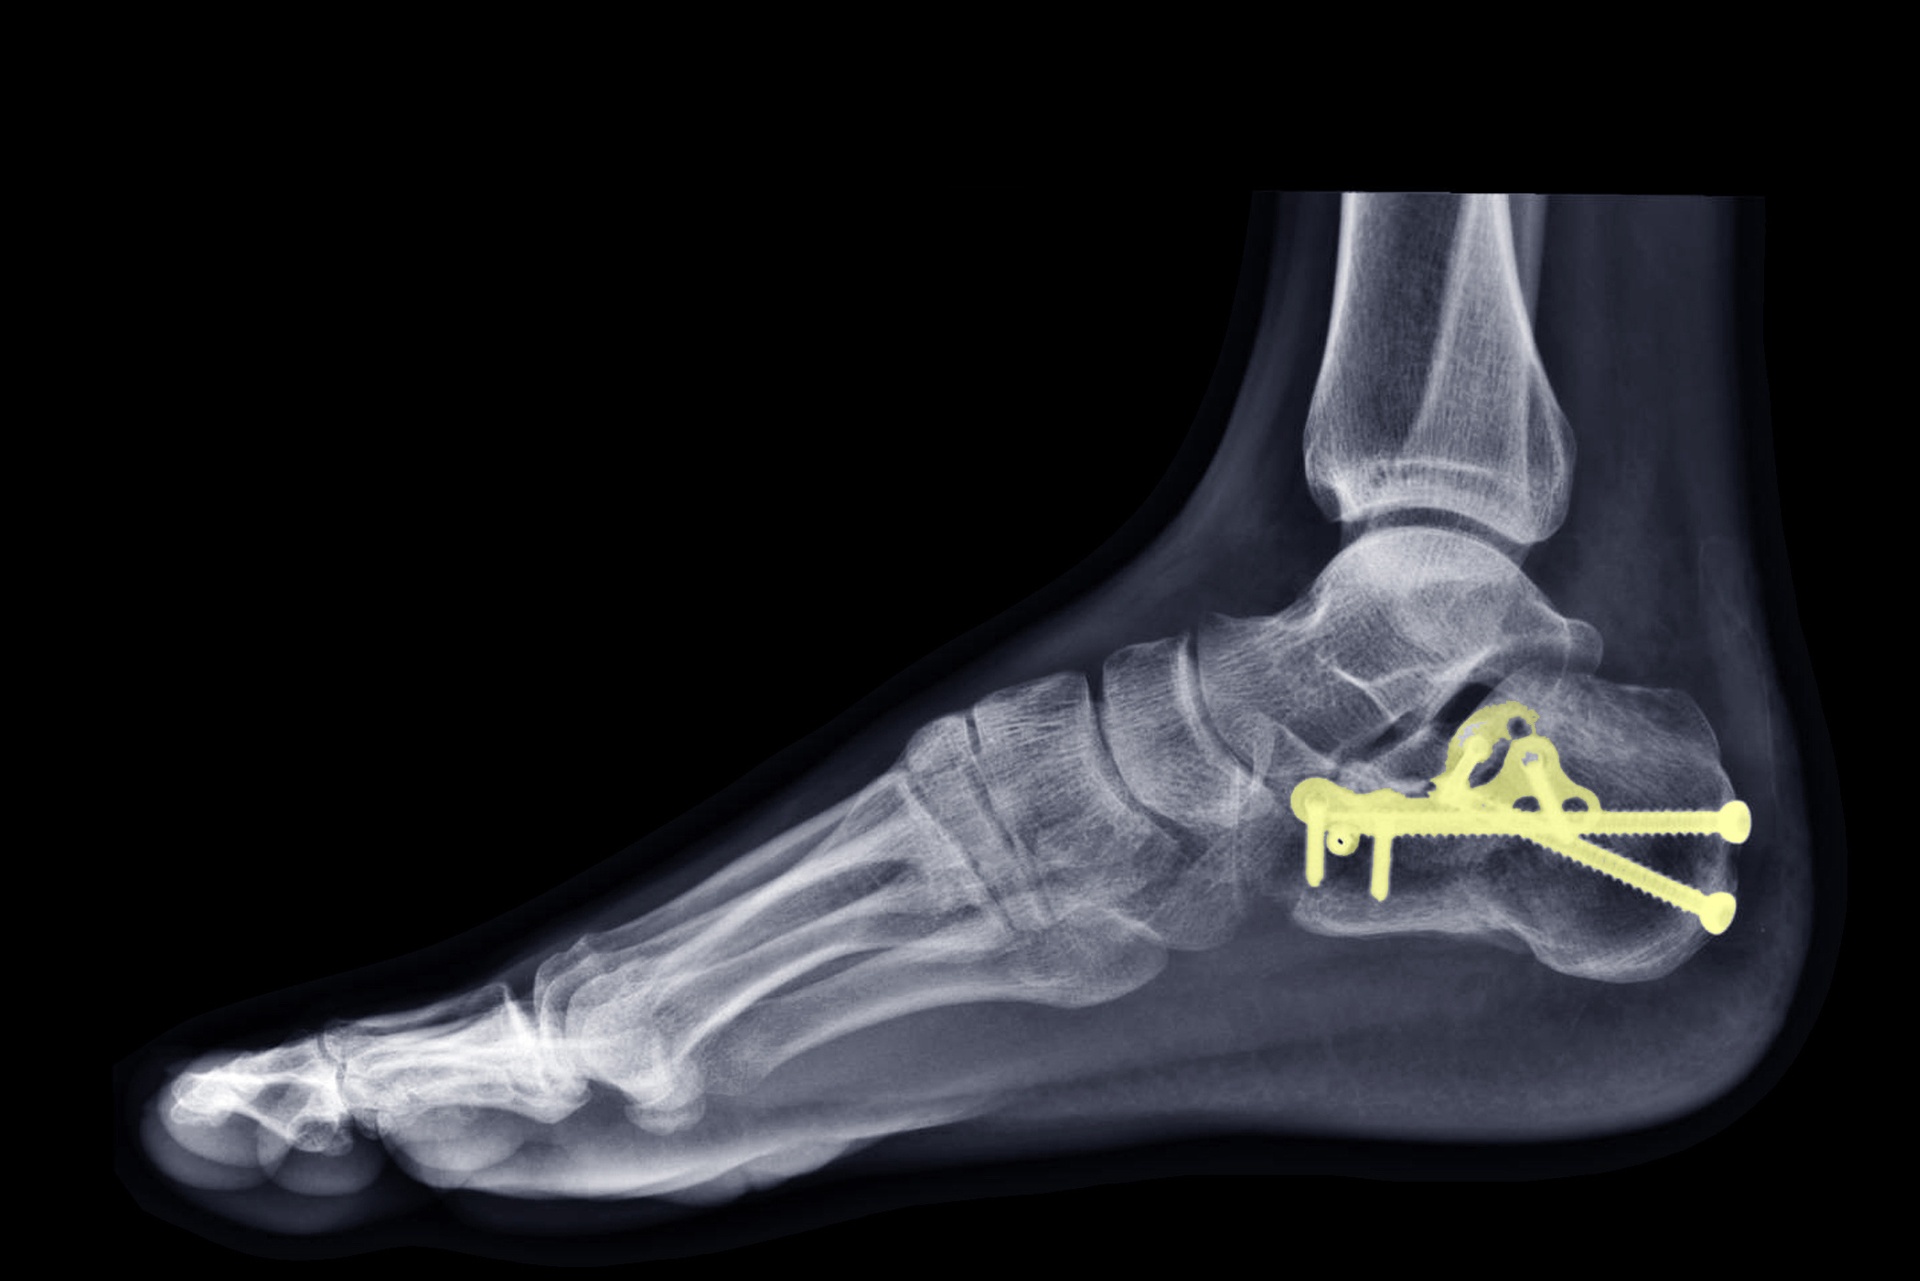 Arthrodesen und Knochenrekonstruktionen am Fuß mit der Shark Screw - OA Dr. Georg Scheidel